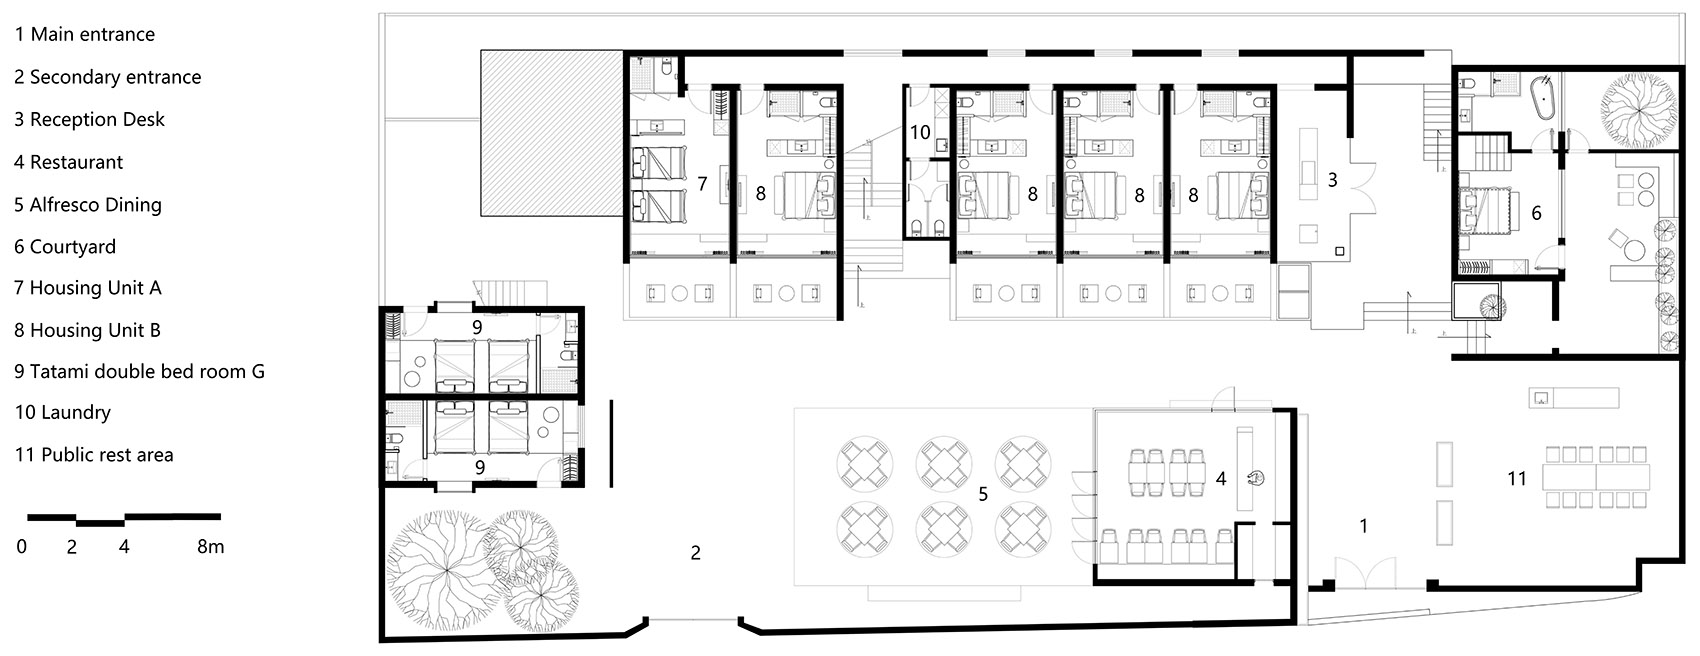 40-HOUSE-OF-MO_DPAA-Design-Studio.jpg